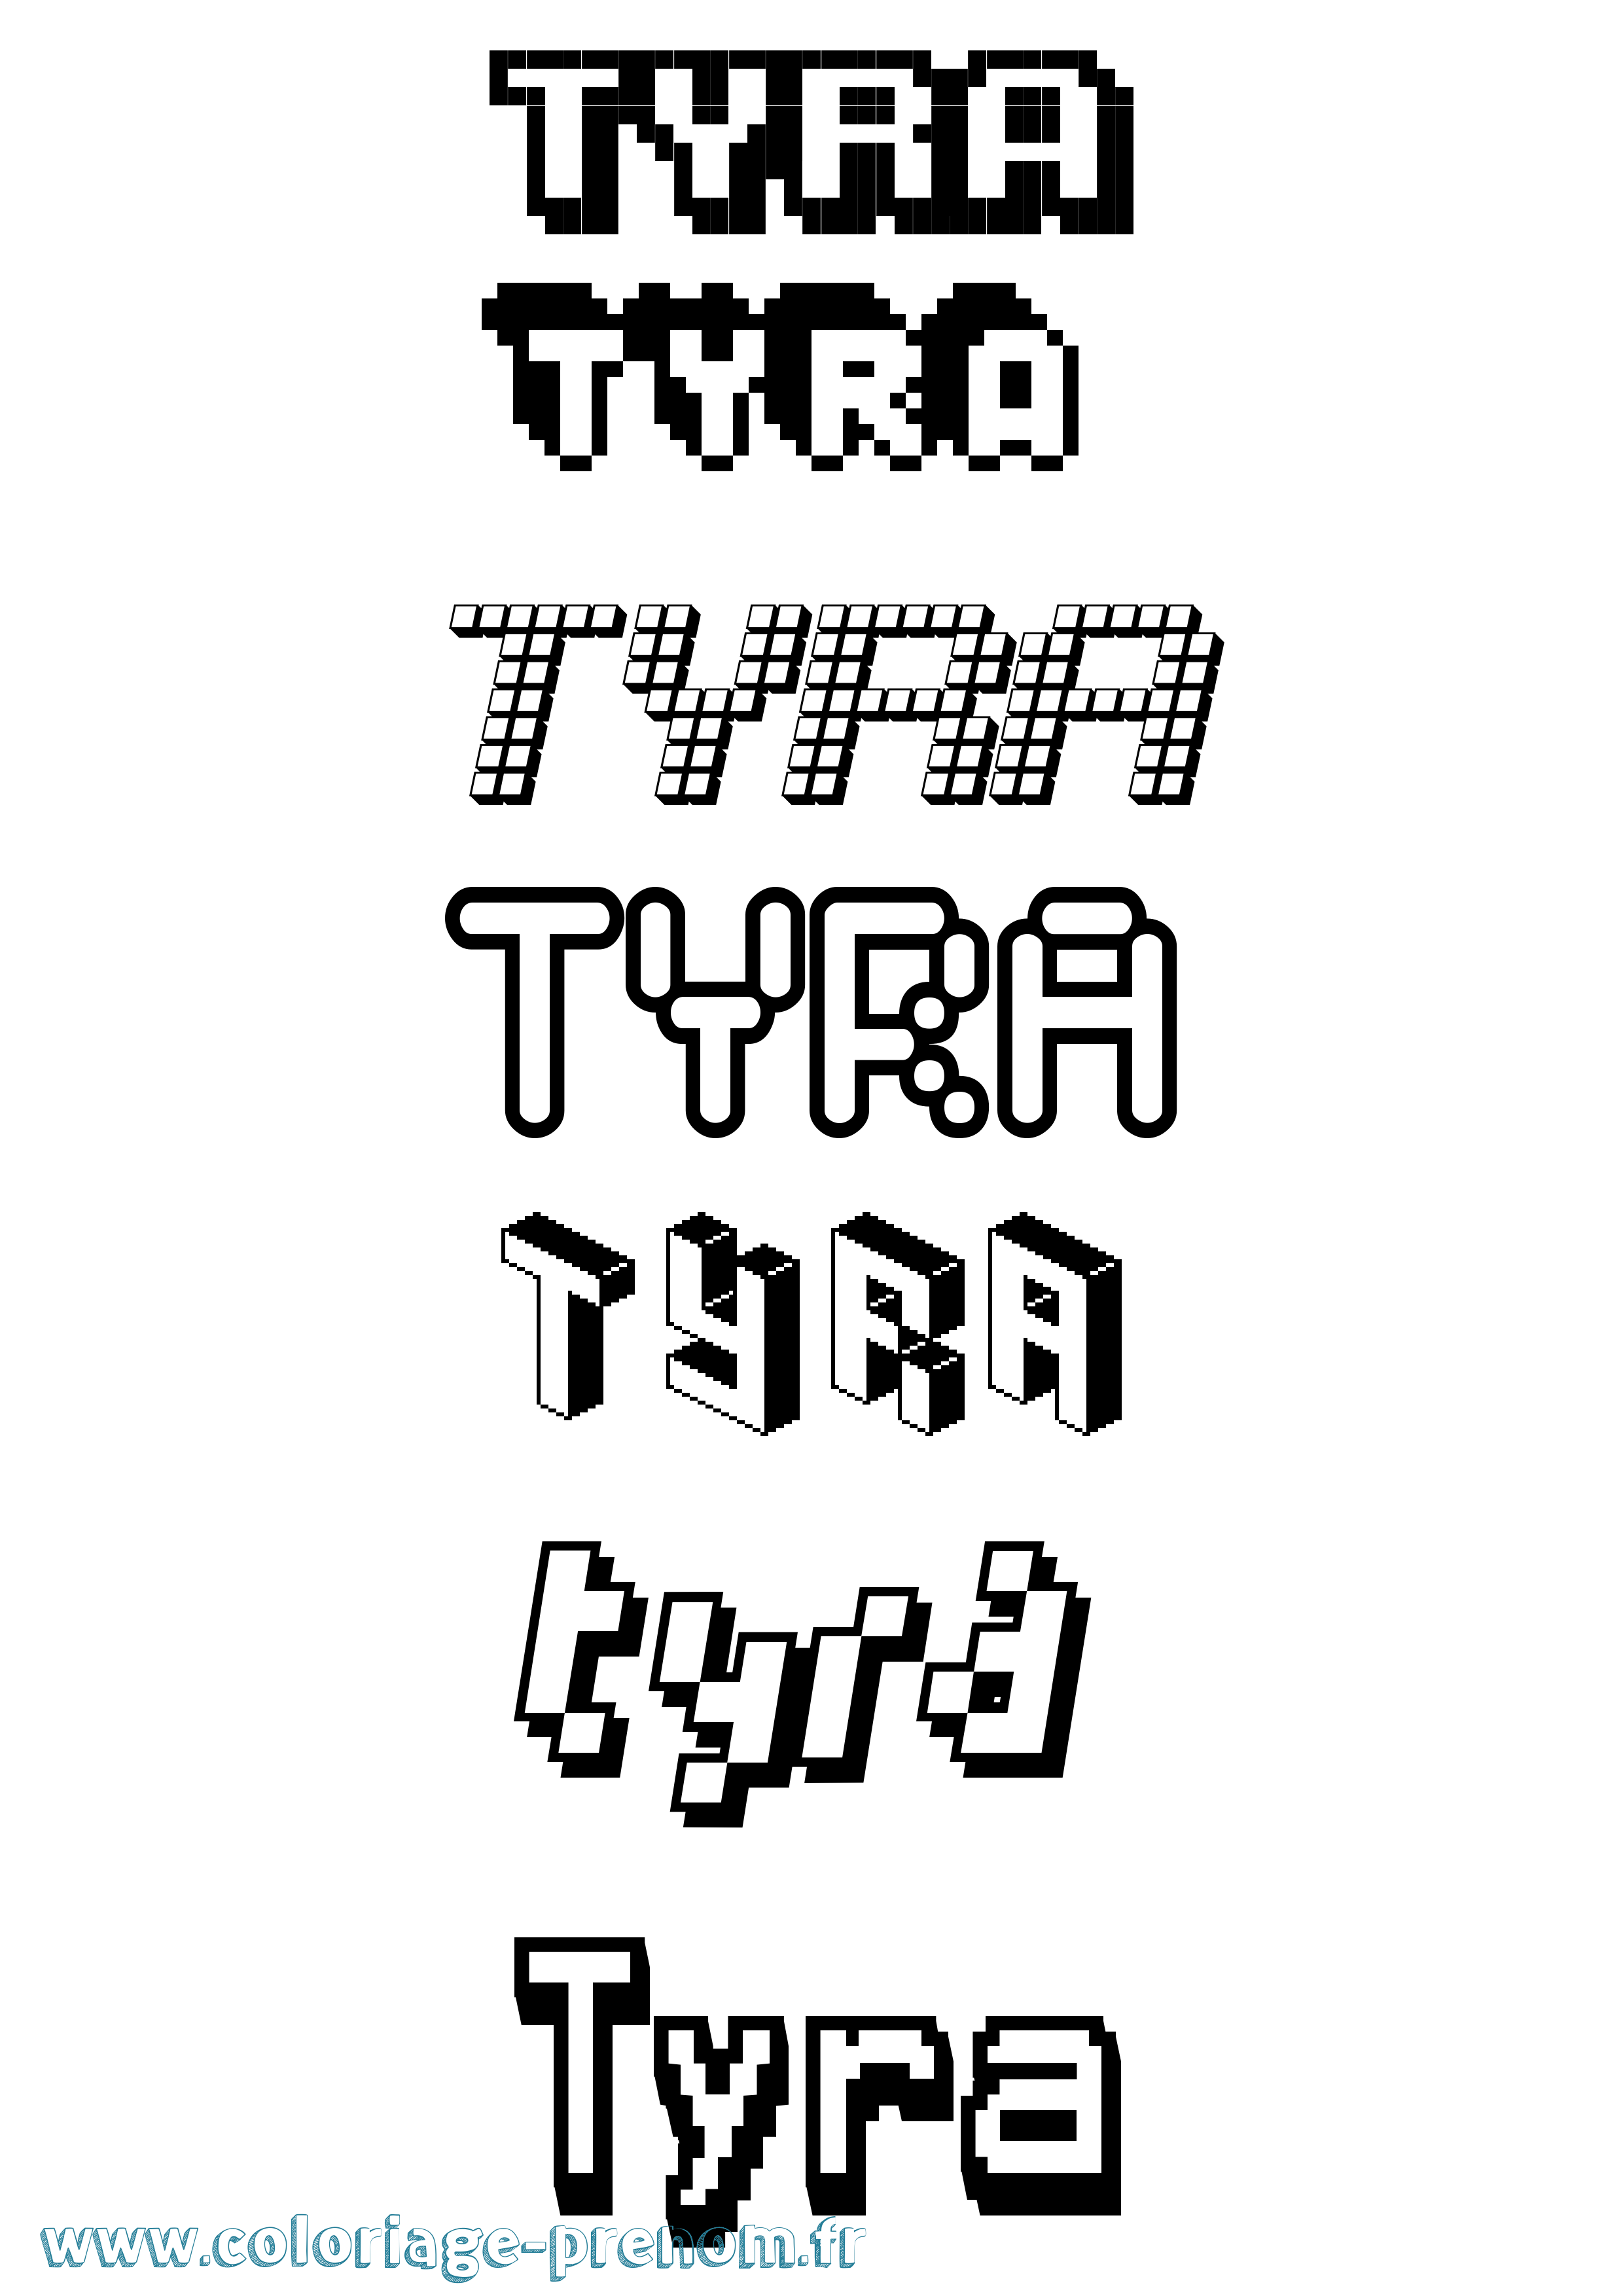 Coloriage prénom Tyra Pixel